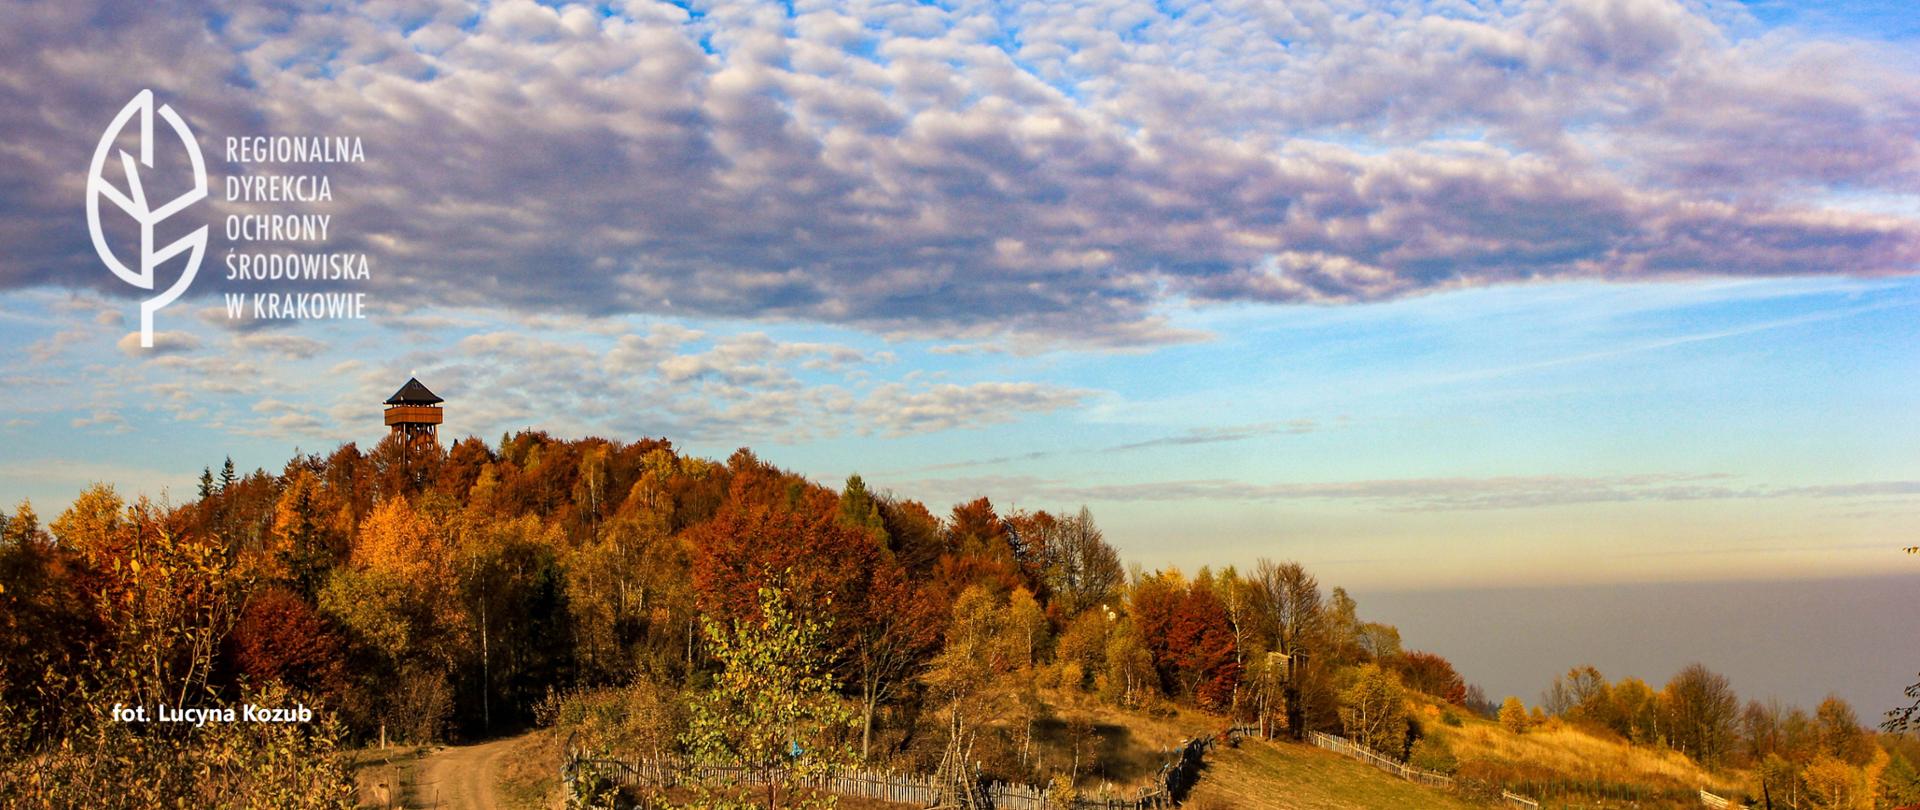 krajobraz górzysty, w tle zalesione wzgórze w jesiennych barwach, na szczycie wieża widokowa